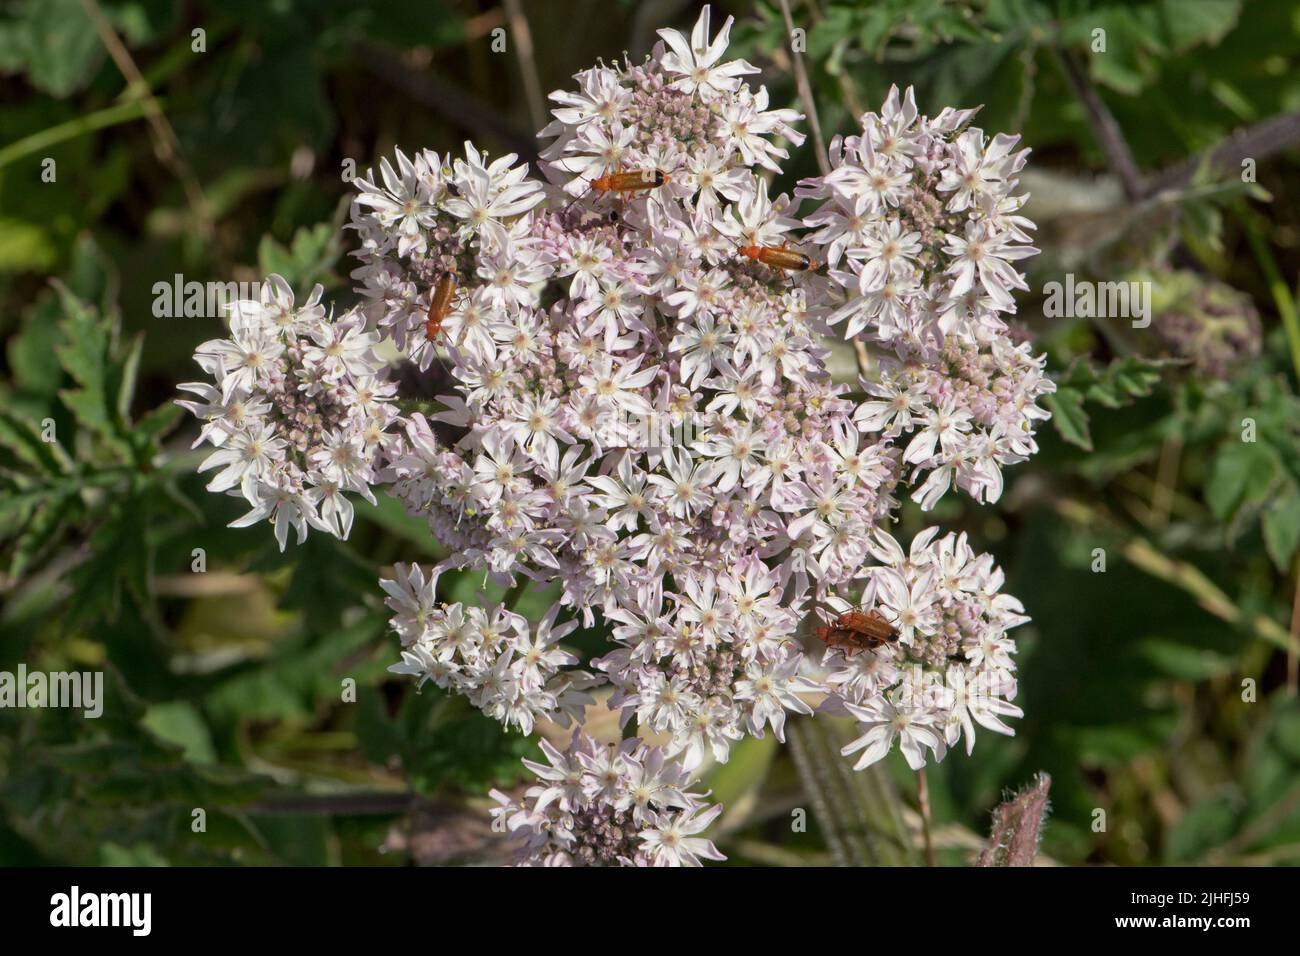 Les coléoptères de soldat rouge (Rhagonycha fulva) qui parcourent et pollinguent l'ombelle à fleurs blanches de l'herbe à poux commune (Heracleum sphondylium), Berkshire, Jul Banque D'Images